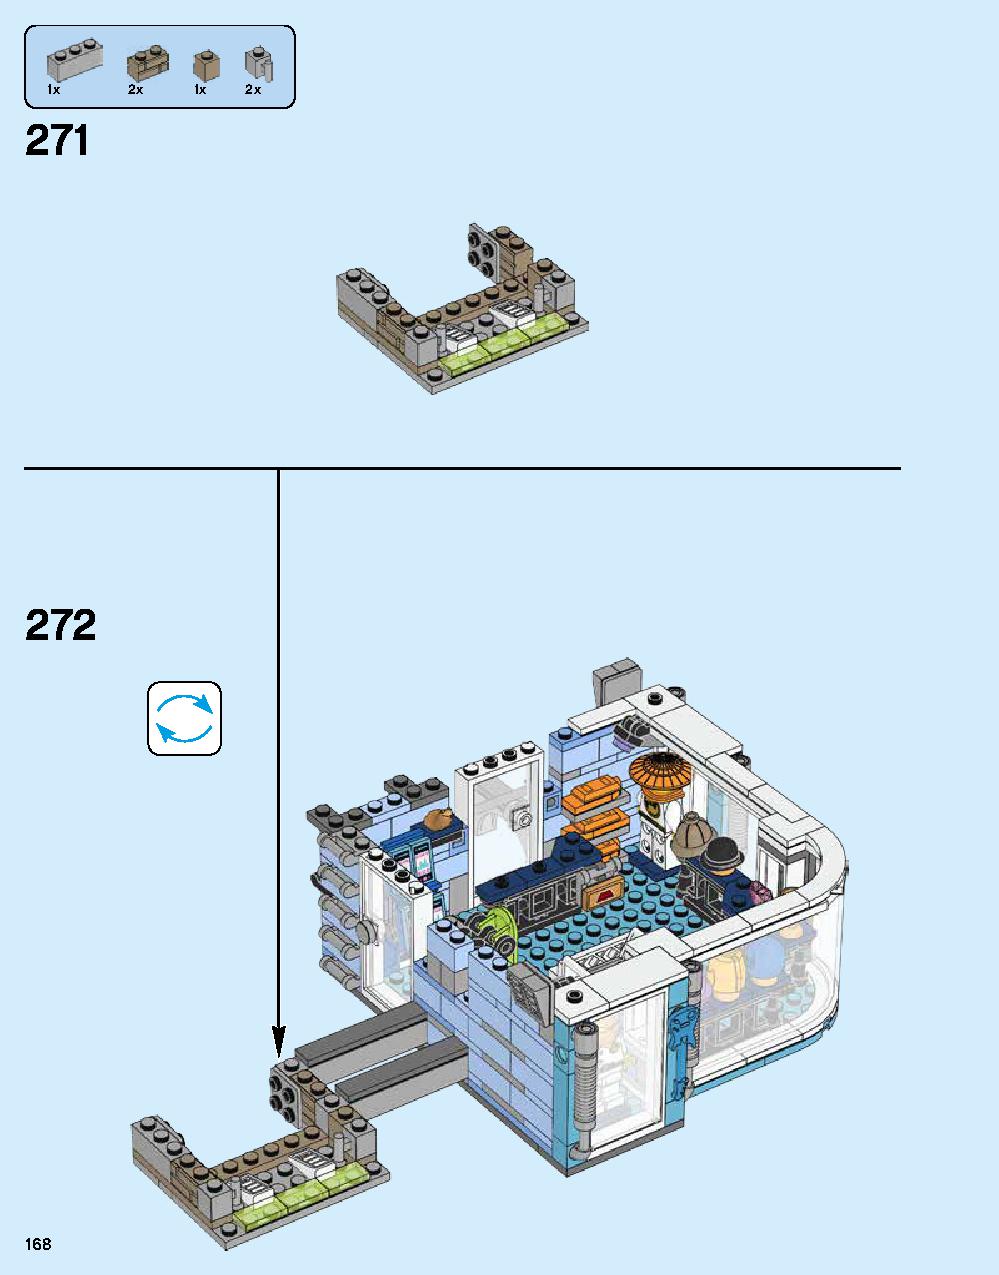 ニンジャゴー シティ 70620 レゴの商品情報 レゴの説明書・組立方法 168 page